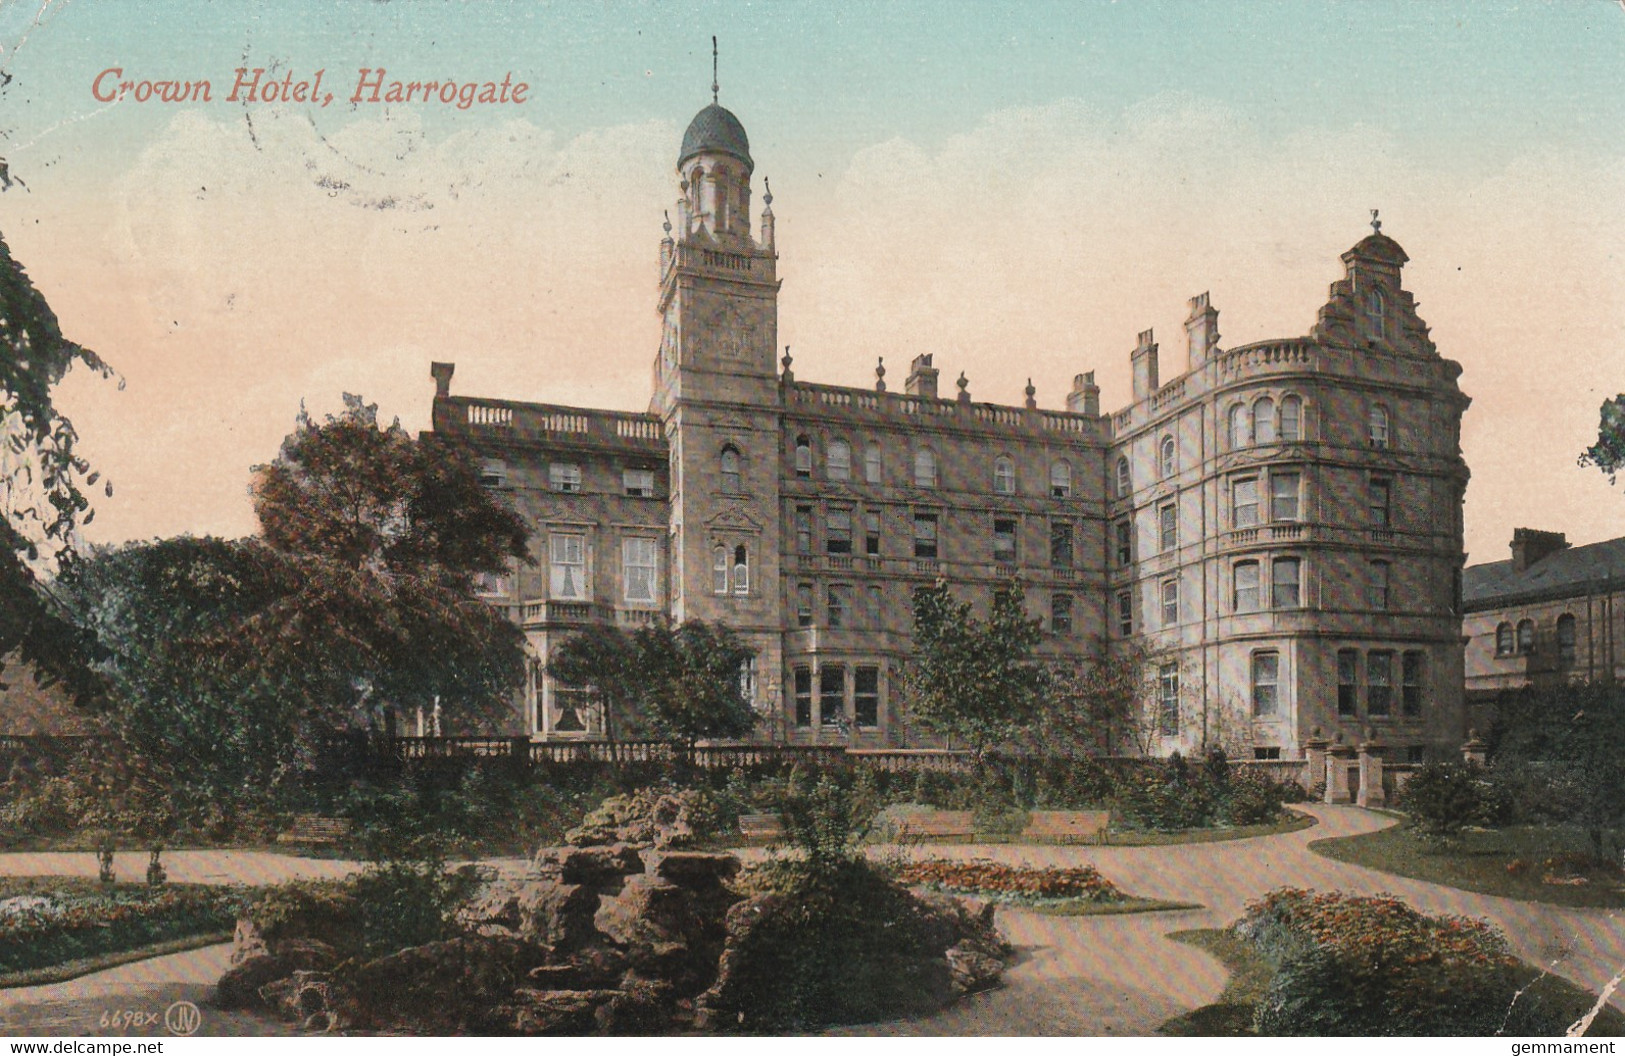 HARROGATE -CROWN HOTEL - Harrogate